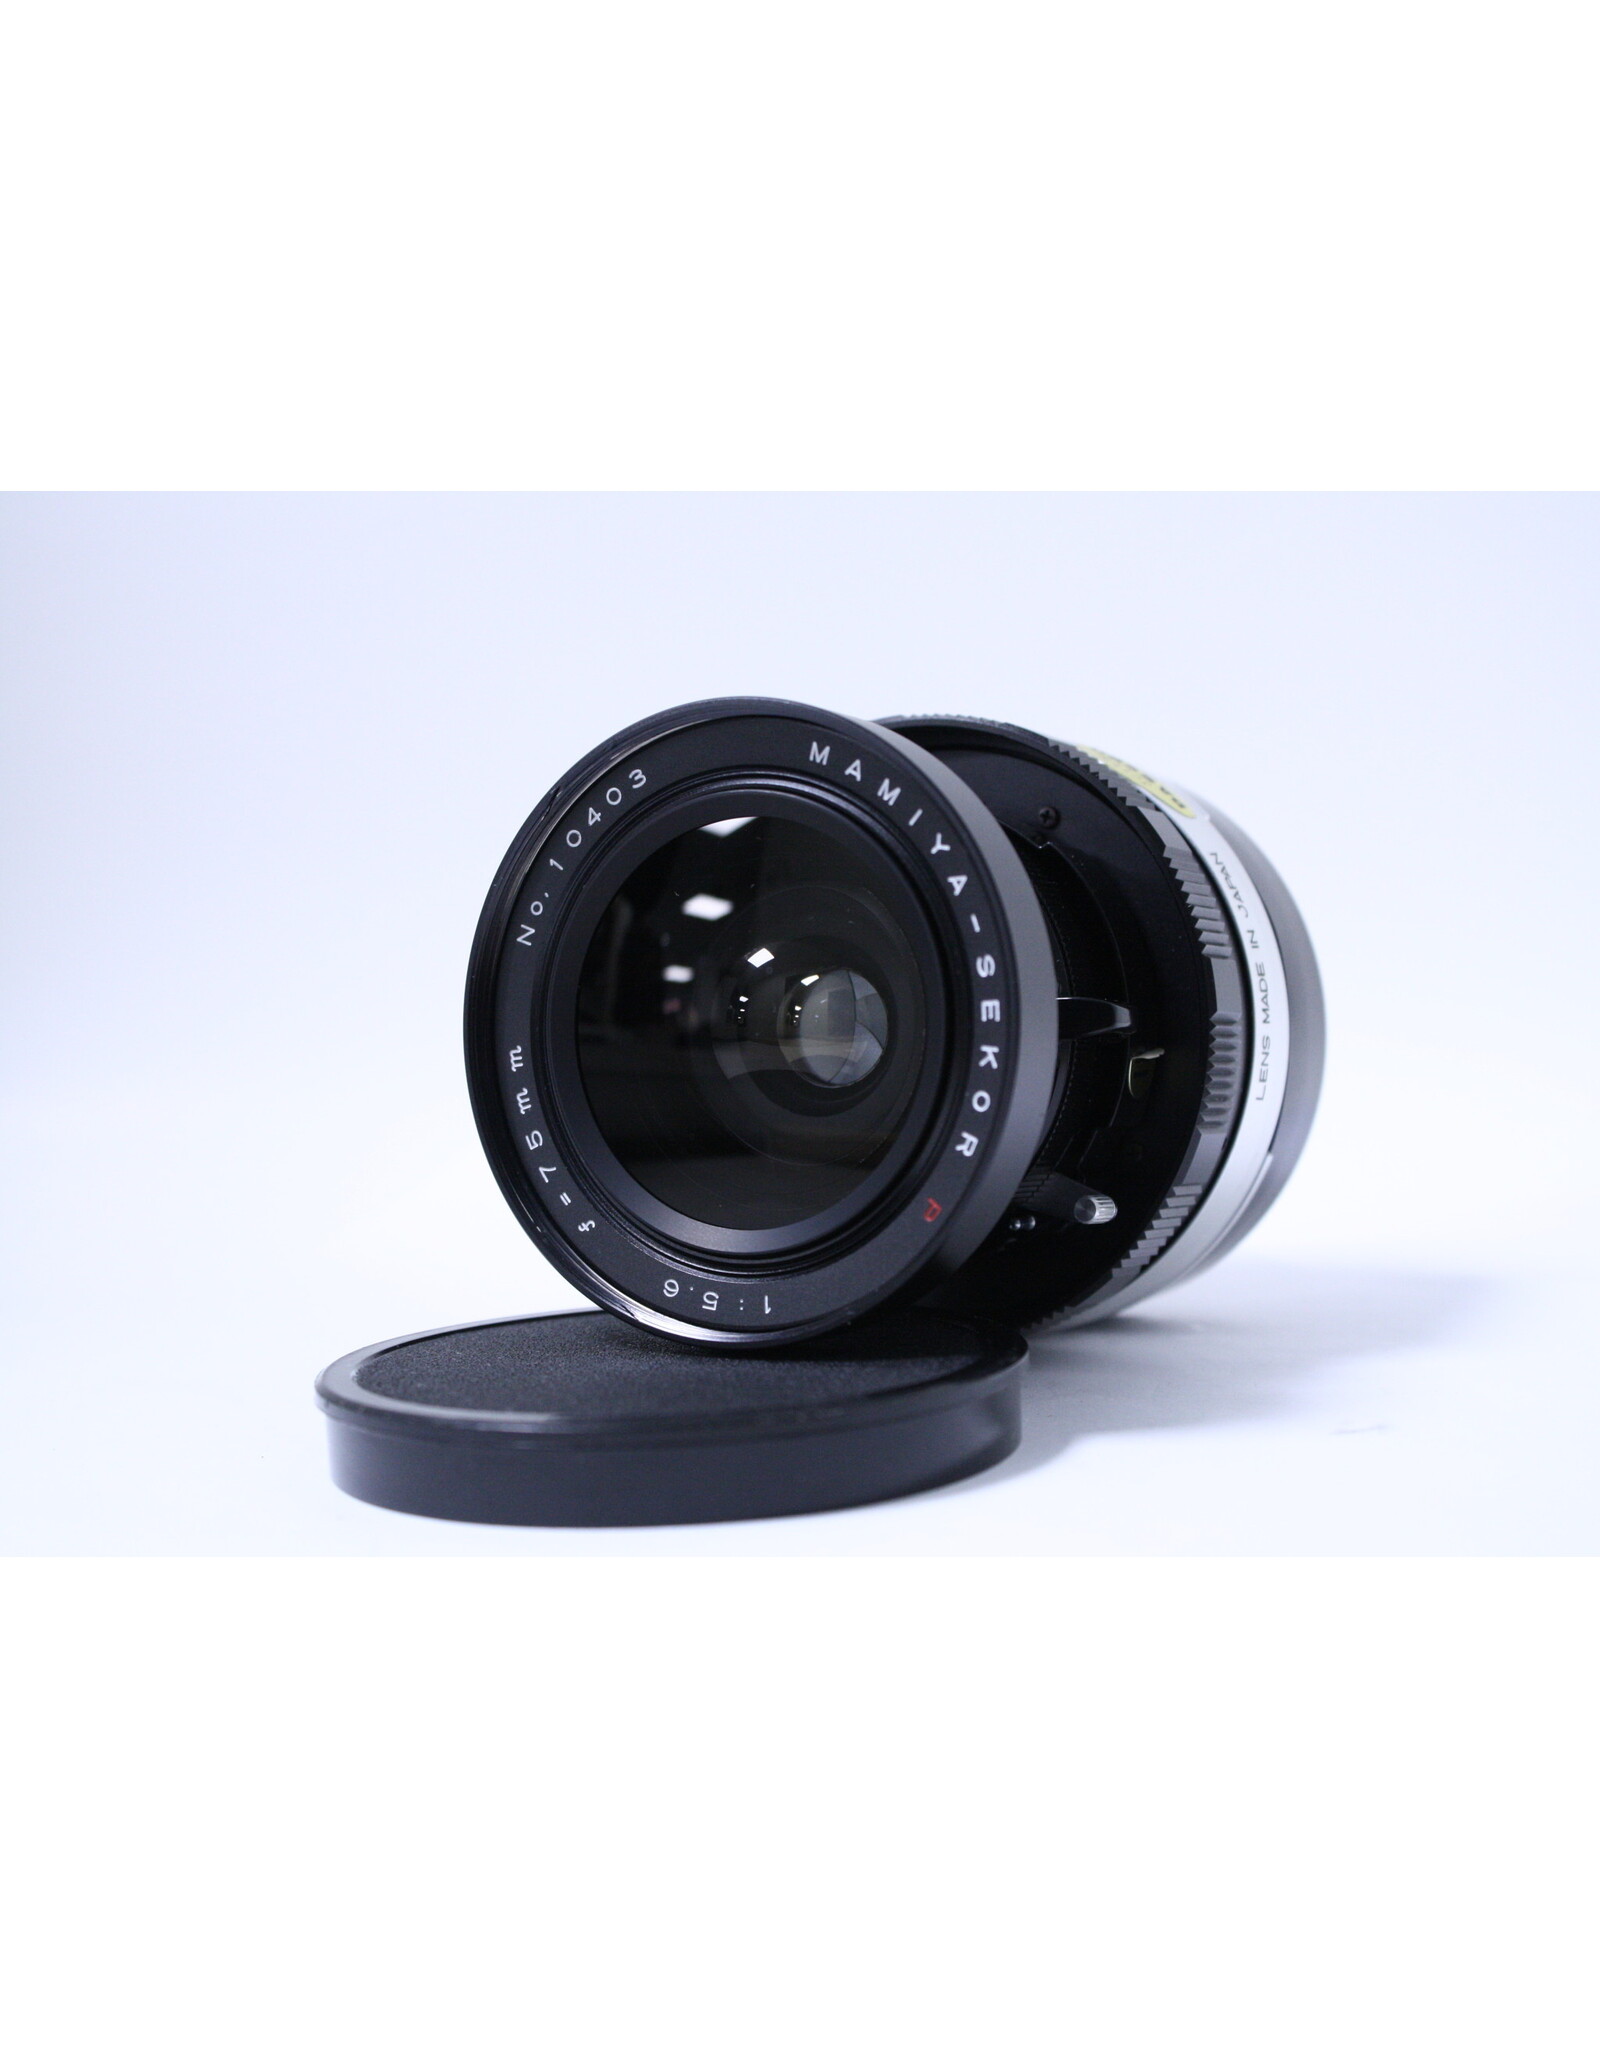 Mamiya-Sekor Mamiya Sekor 75mm f/5.6 Lens for Mamiya Press 23 Camera with Rangefinder and hood and hard case(Pre-Owned)